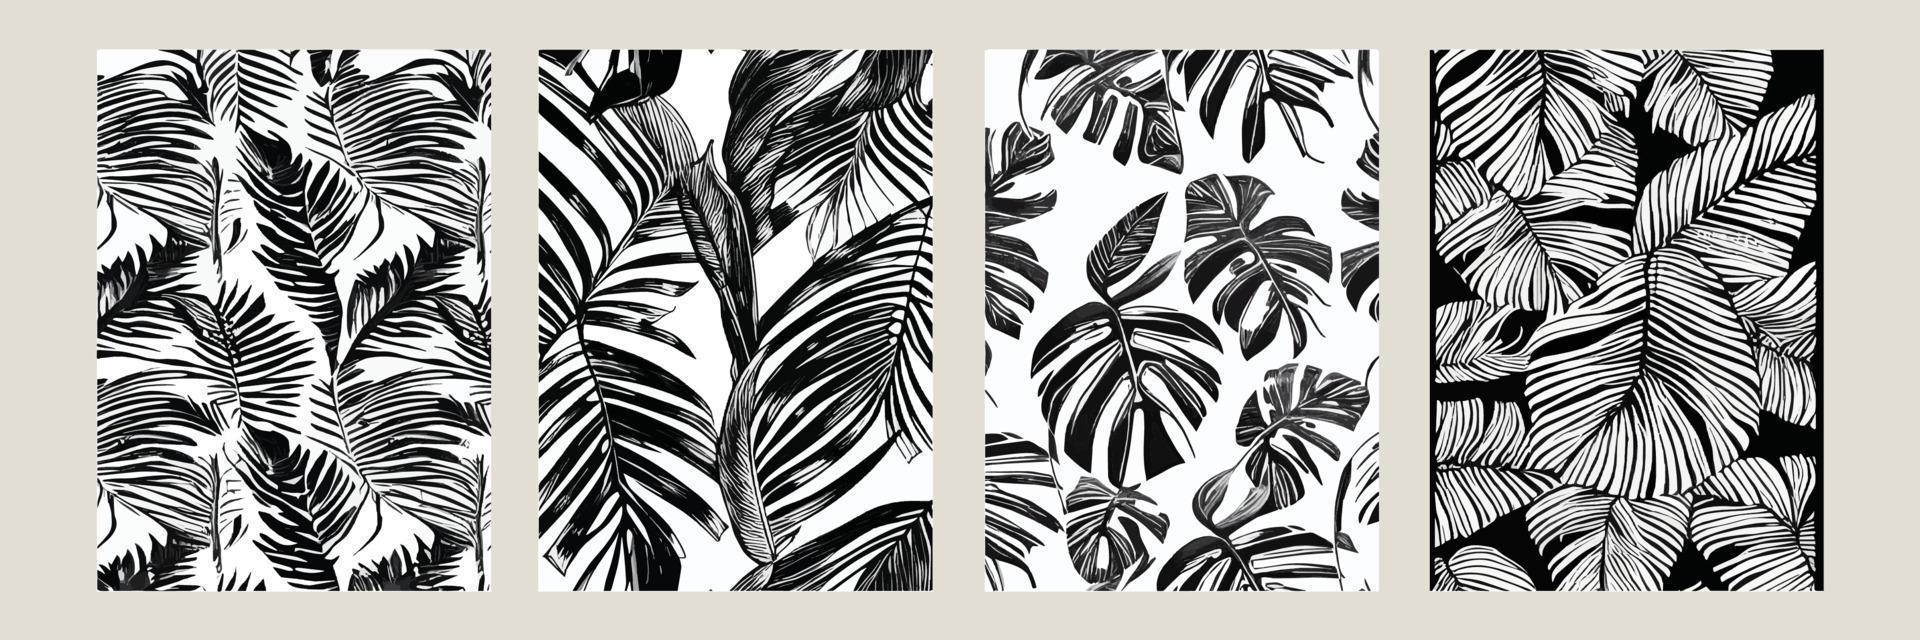 definir folhas exóticas sem costura padrão preto branco. fundo decorativo elegante vetor abstrato. folhas de palmeira tropical, padrão floral de vetor sem costura de folha de selva. papel de parede estilo tropical grunge.